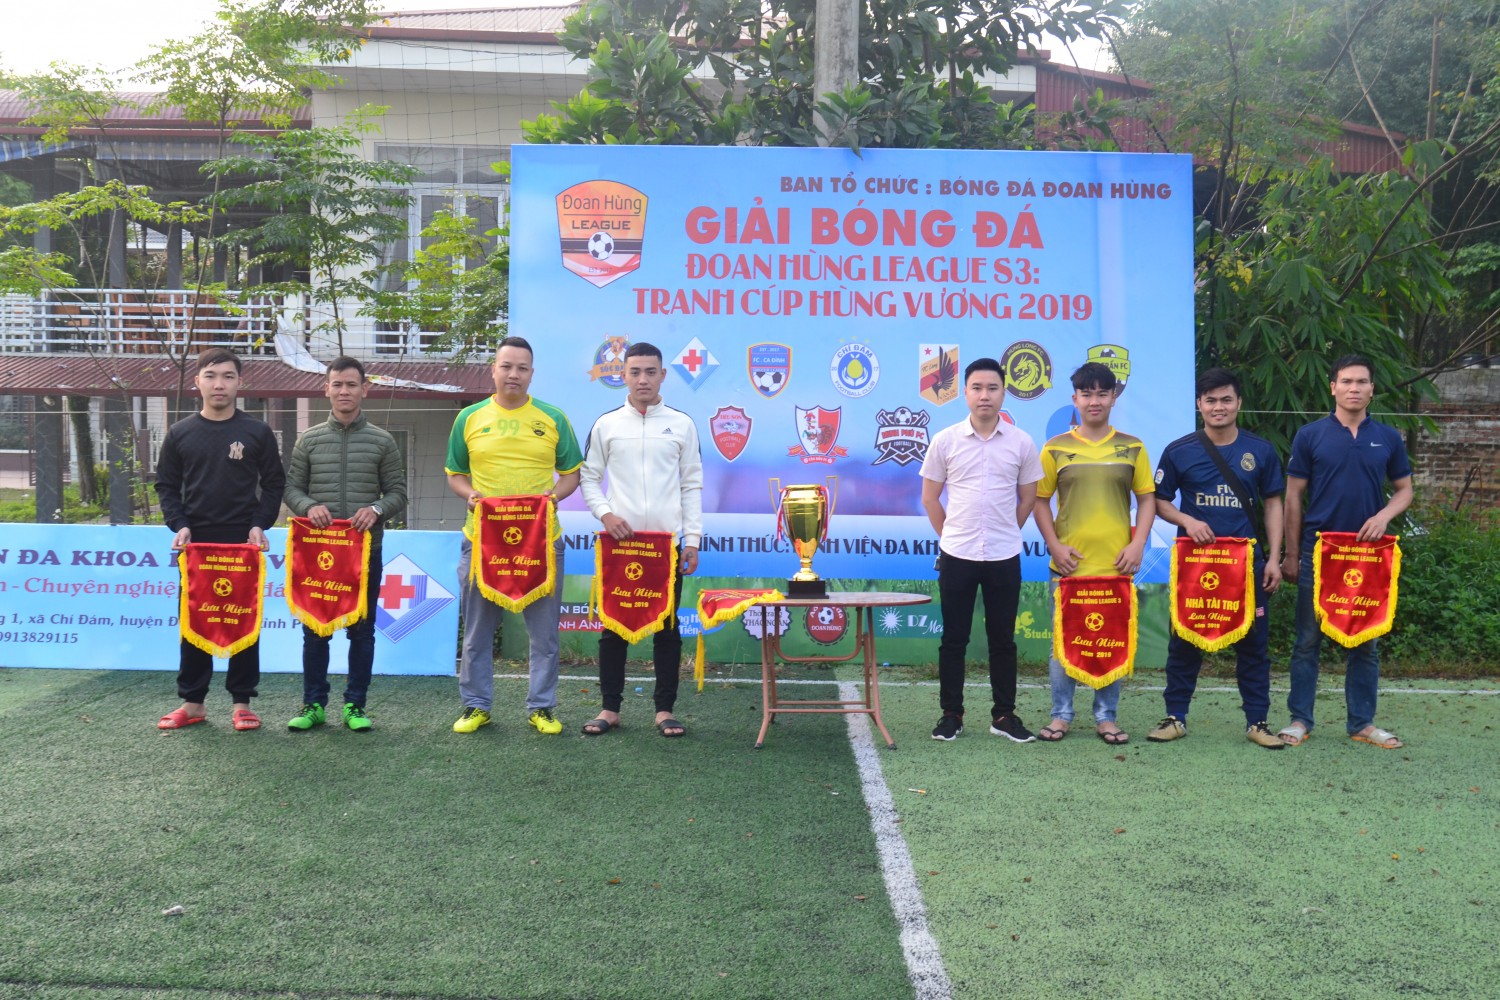 Khai mạc giải bóng đá lớn nhất Huyện Đoan Hùng - Phú Thọ năm 2019.